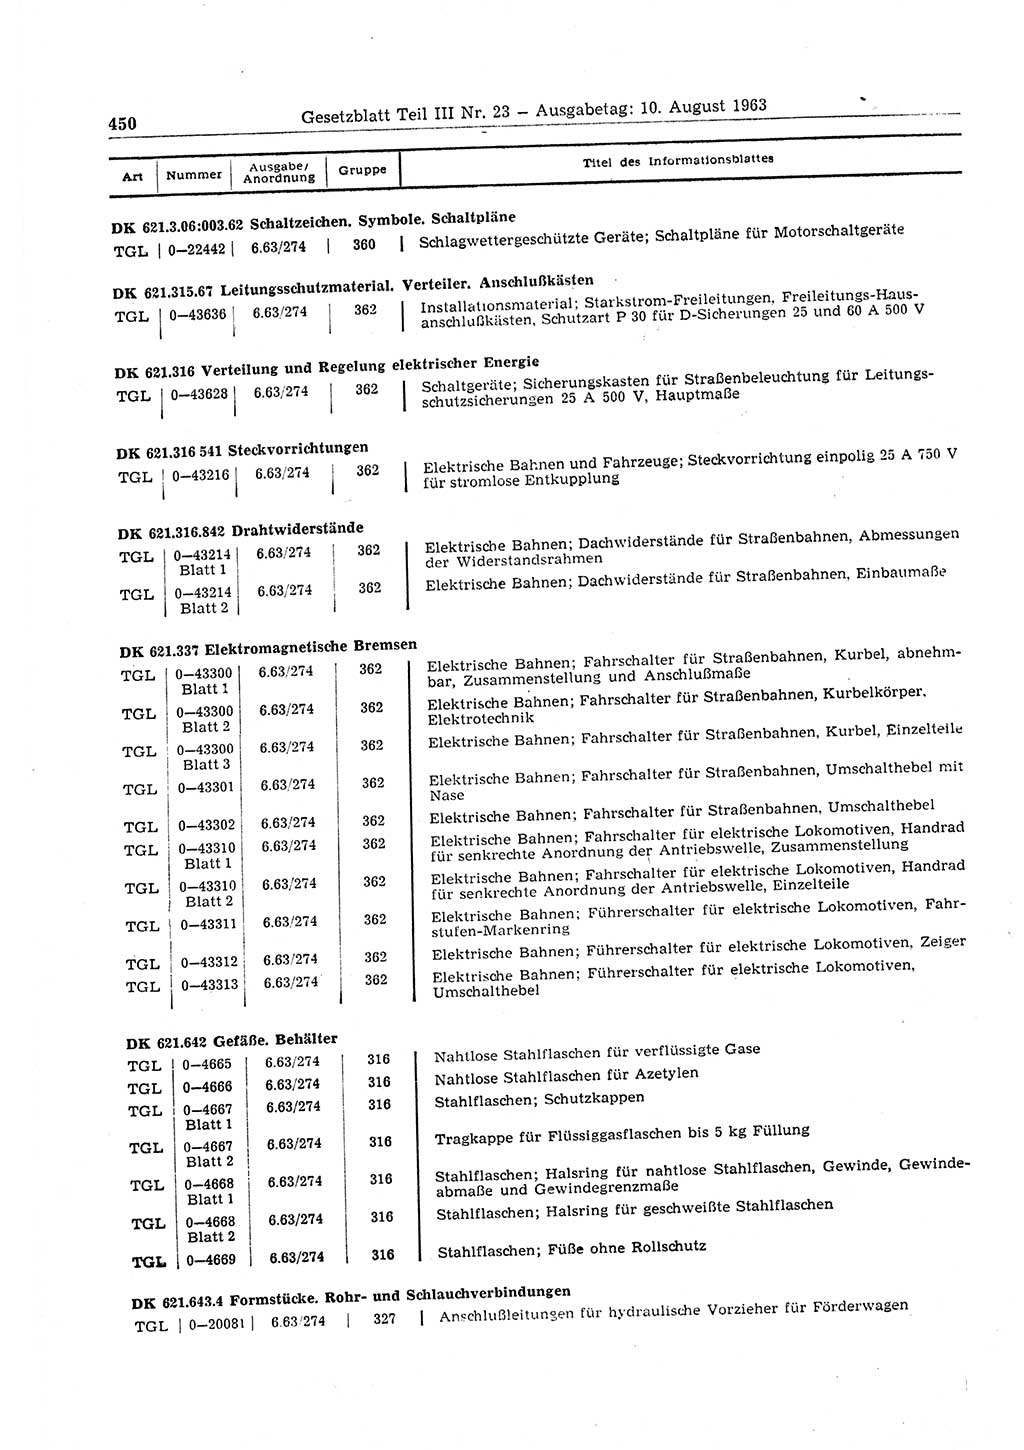 Gesetzblatt (GBl.) der Deutschen Demokratischen Republik (DDR) Teil ⅠⅠⅠ 1963, Seite 450 (GBl. DDR ⅠⅠⅠ 1963, S. 450)